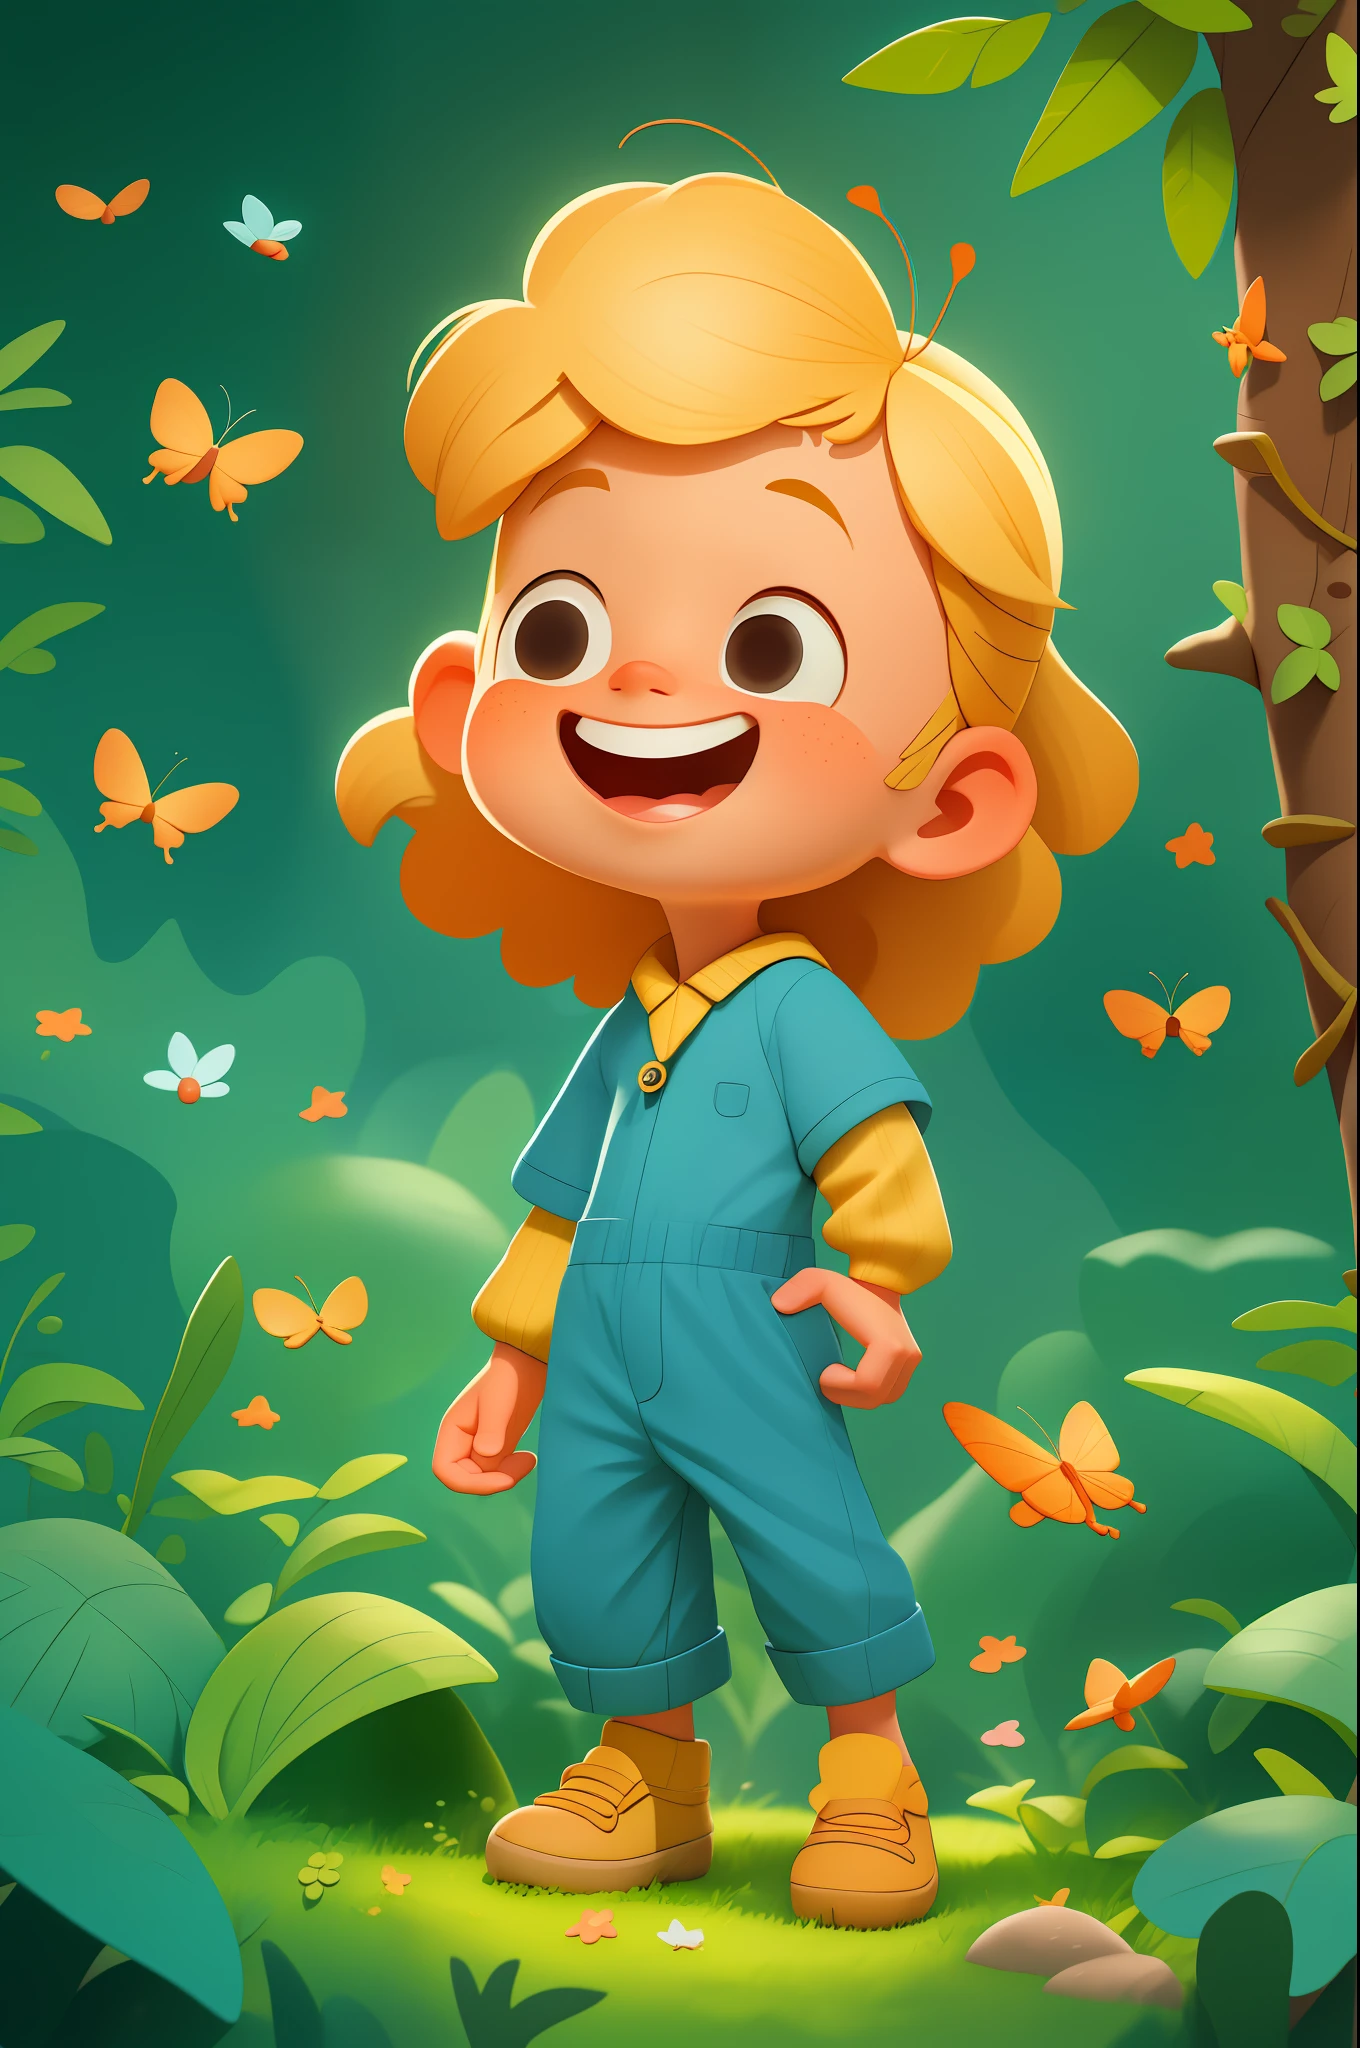 a happy cute 孩子, 肖像, 金头发, 穿着蓝色太空服, 和蝴蝶一起玩, 户外, 背景森林, 孩子, 语气, 皮克斯风格, 3d, car语气, 细致的脸部, 不对称, 上半身